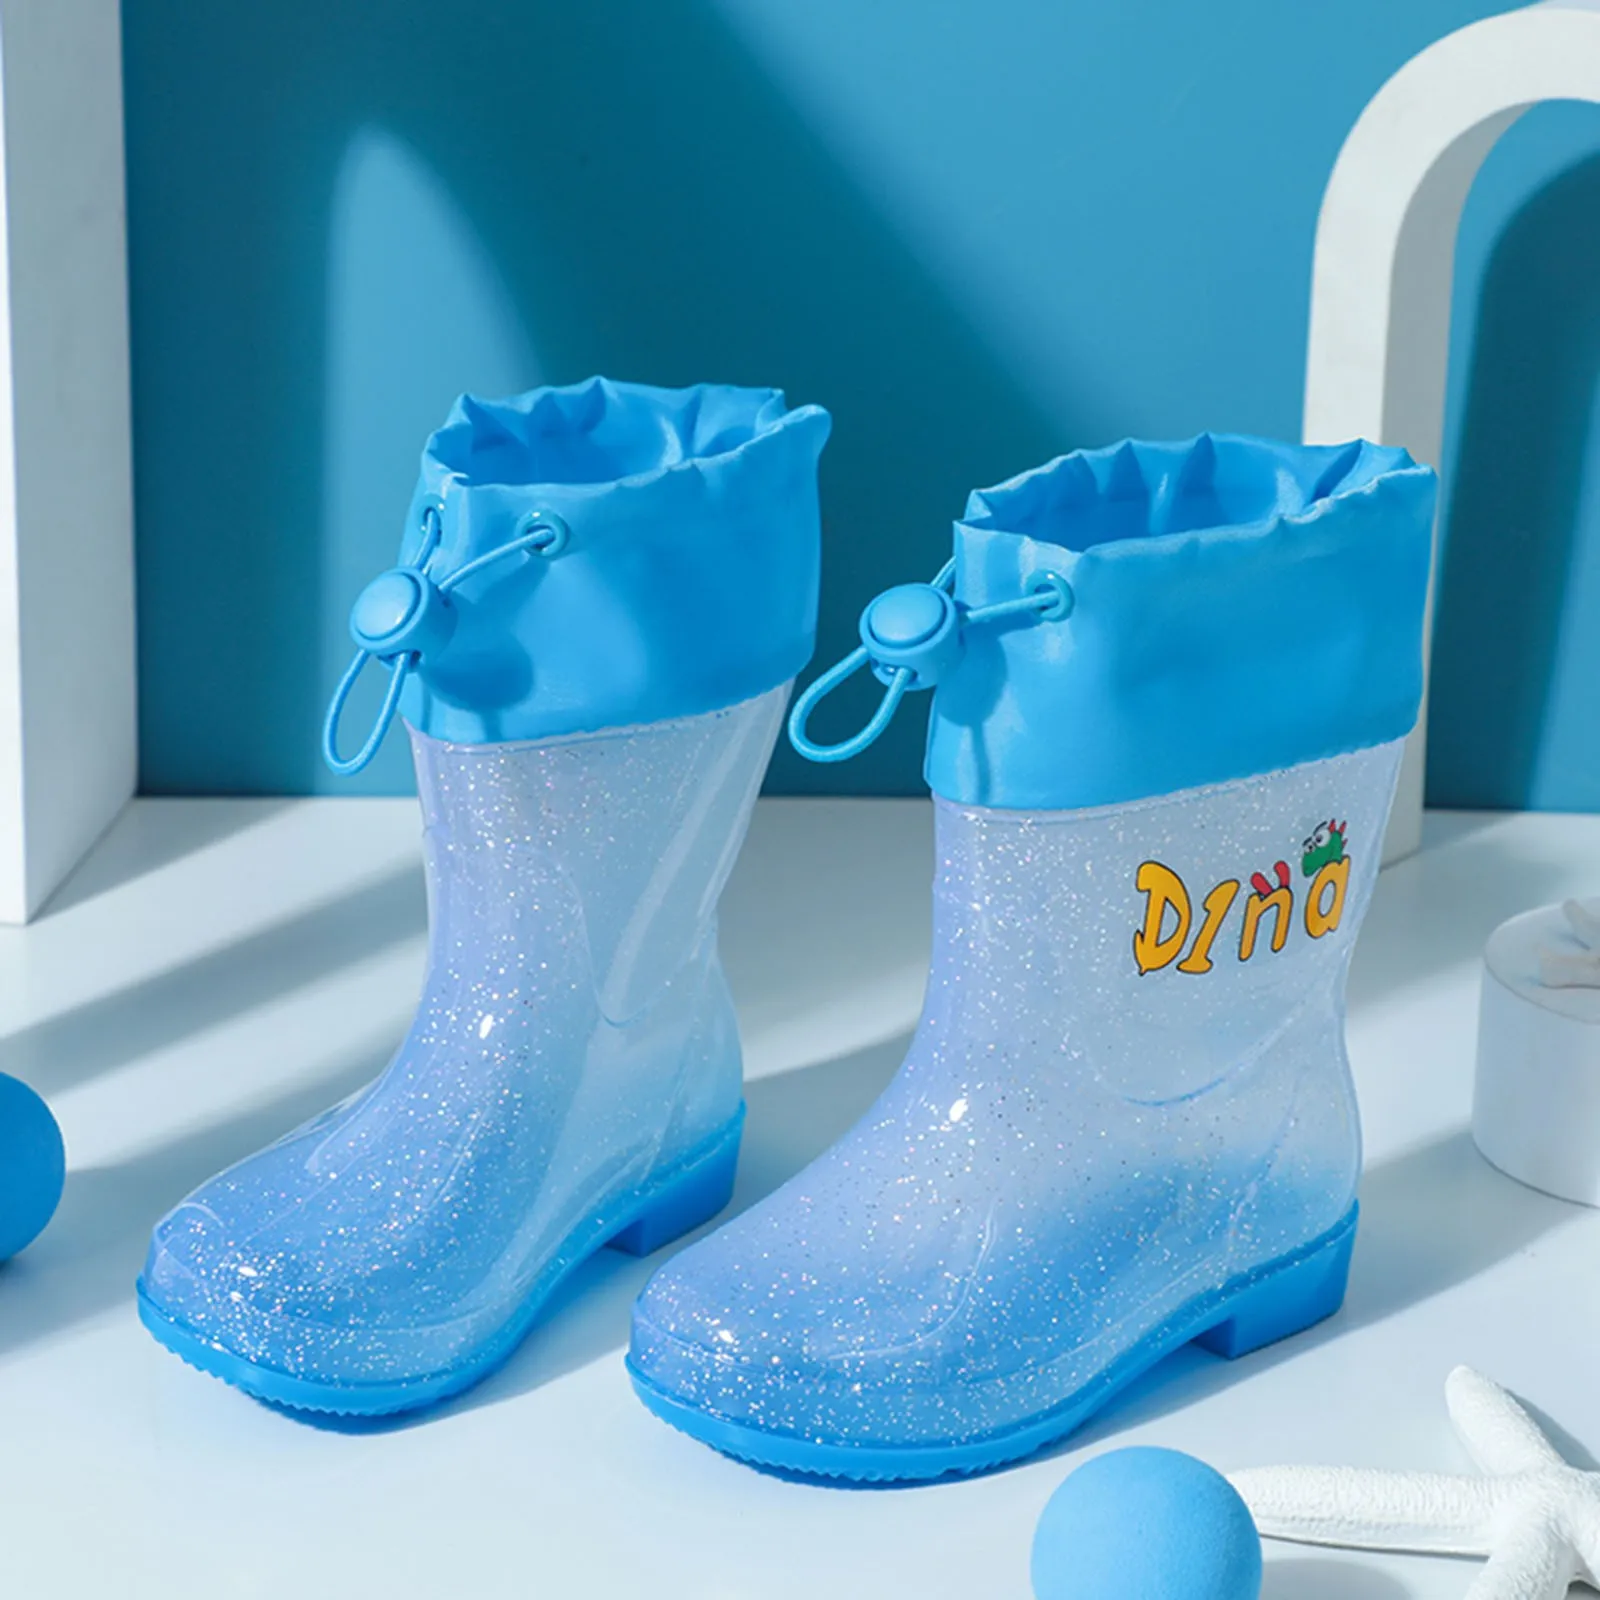 Новые Детские Непромокаемые ботинки для девочек и мальчиков, можно завязать Рот, Зашнуровать, Милые Мультяшные Водонепроницаемые Резиновые сапоги, Детские botas de bebé